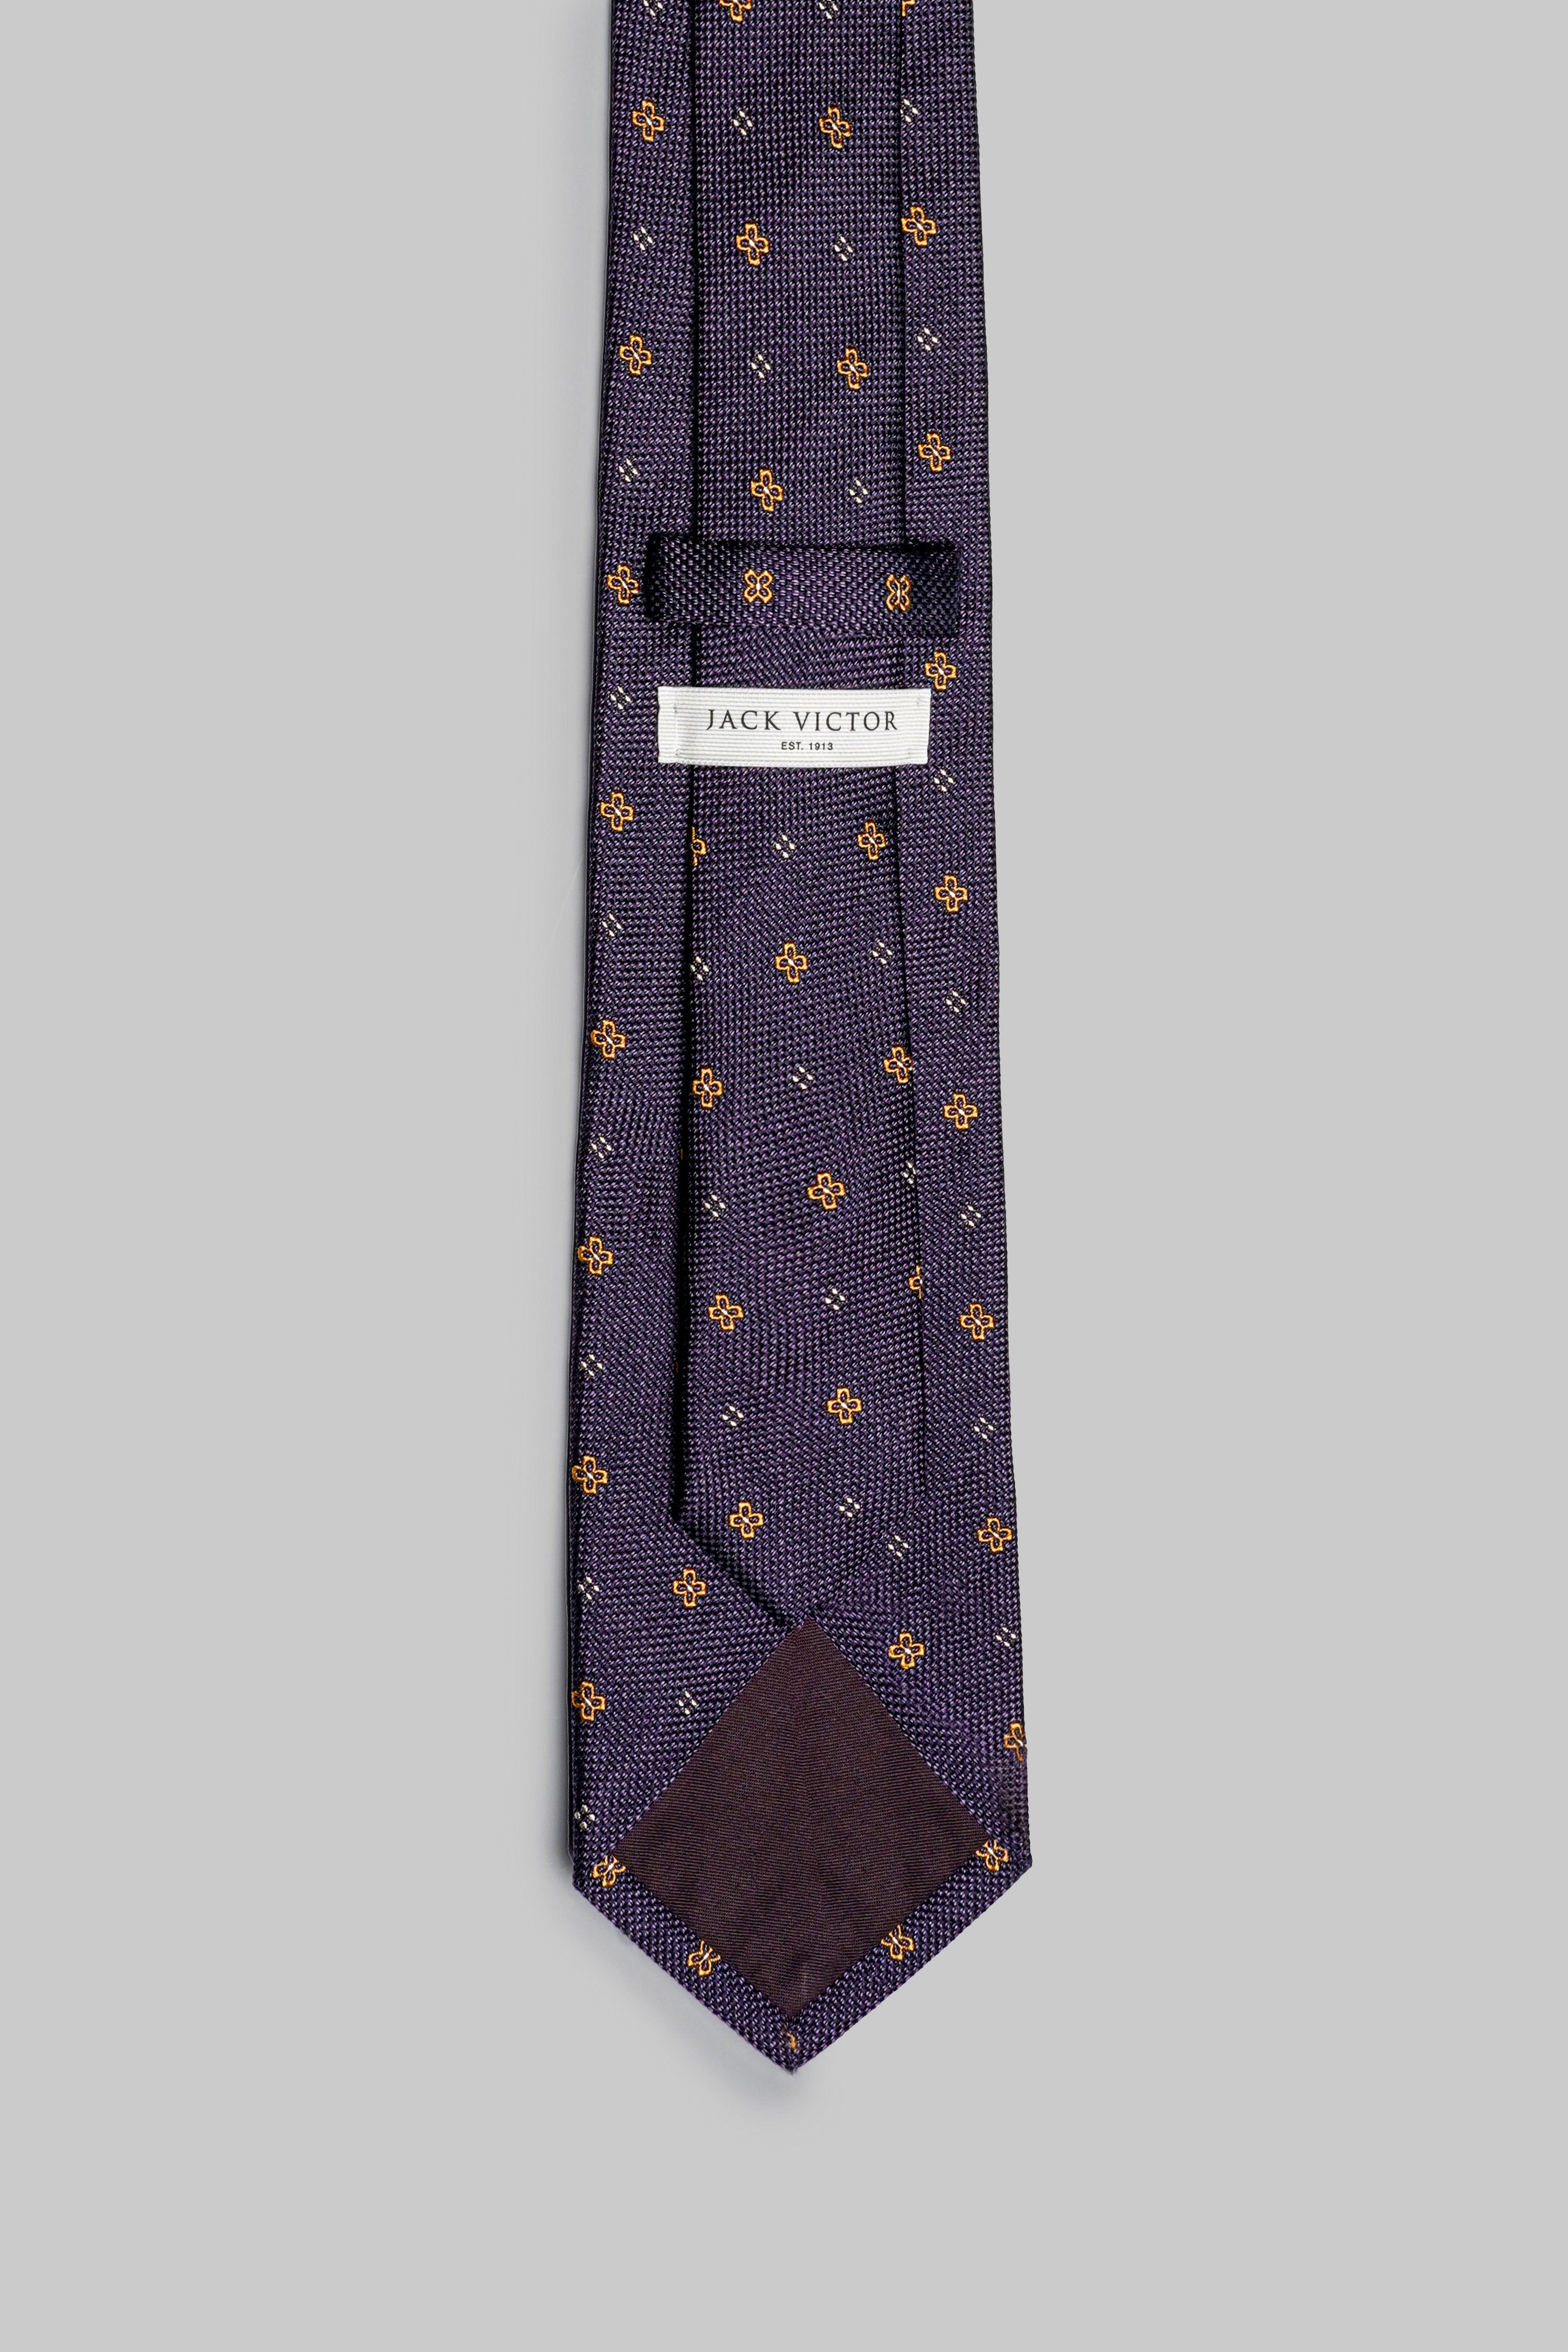 Image of St. George Silk Tie in Purple-Jack Victor